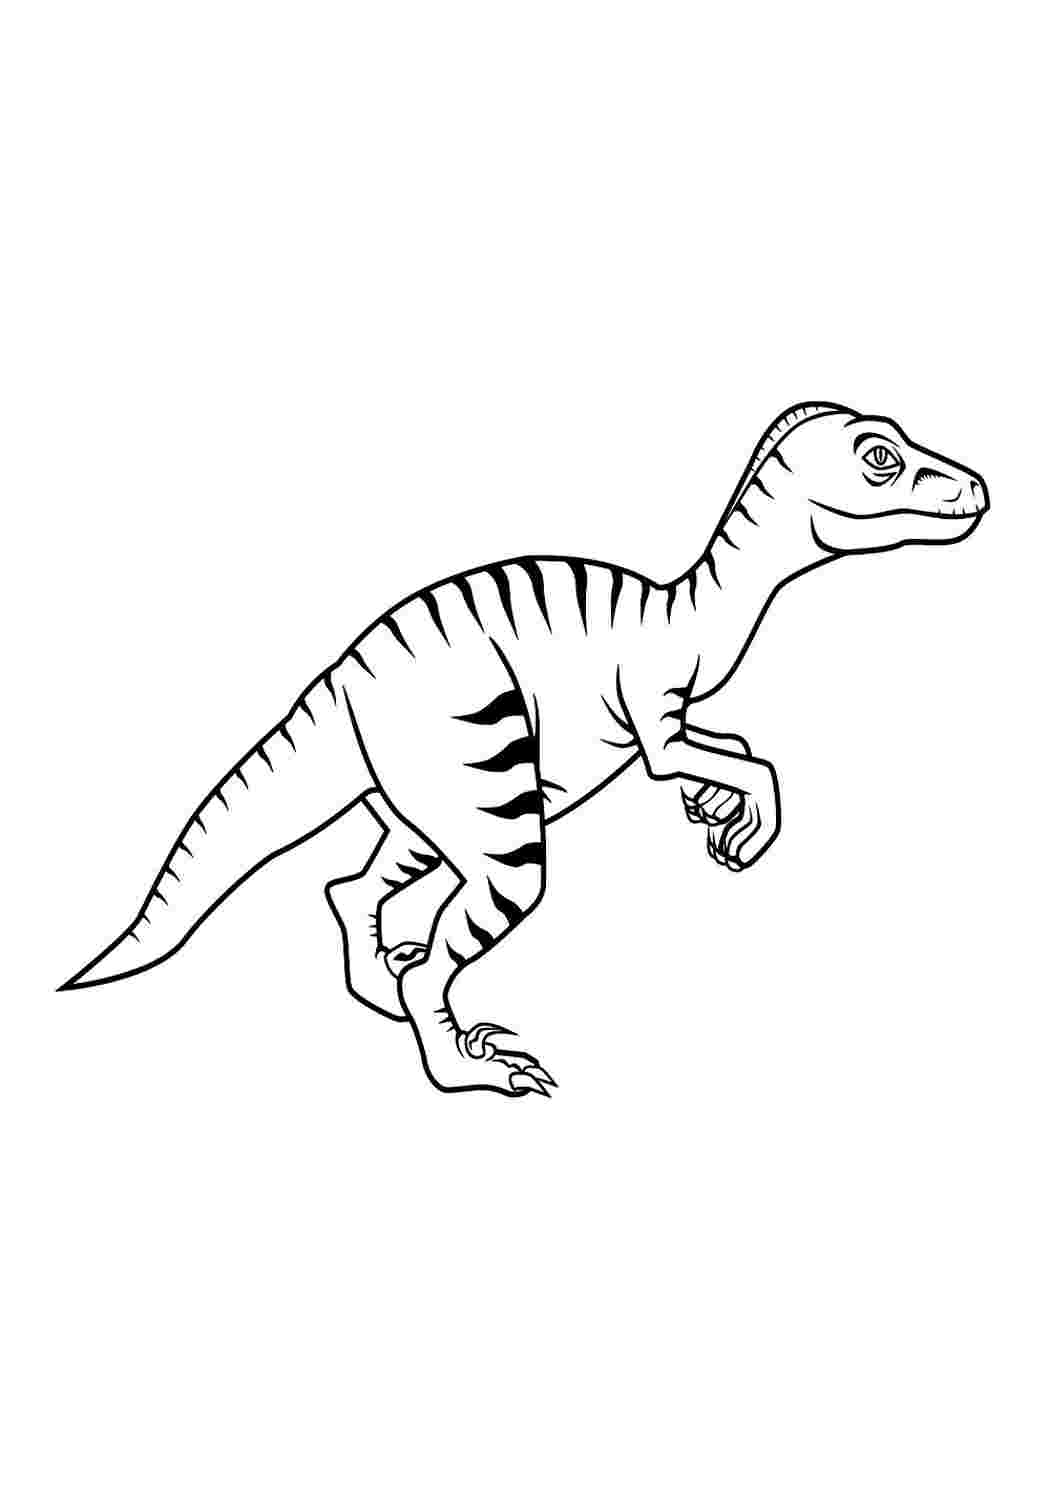 Фото по запросу Распечатать раскраски динозавры